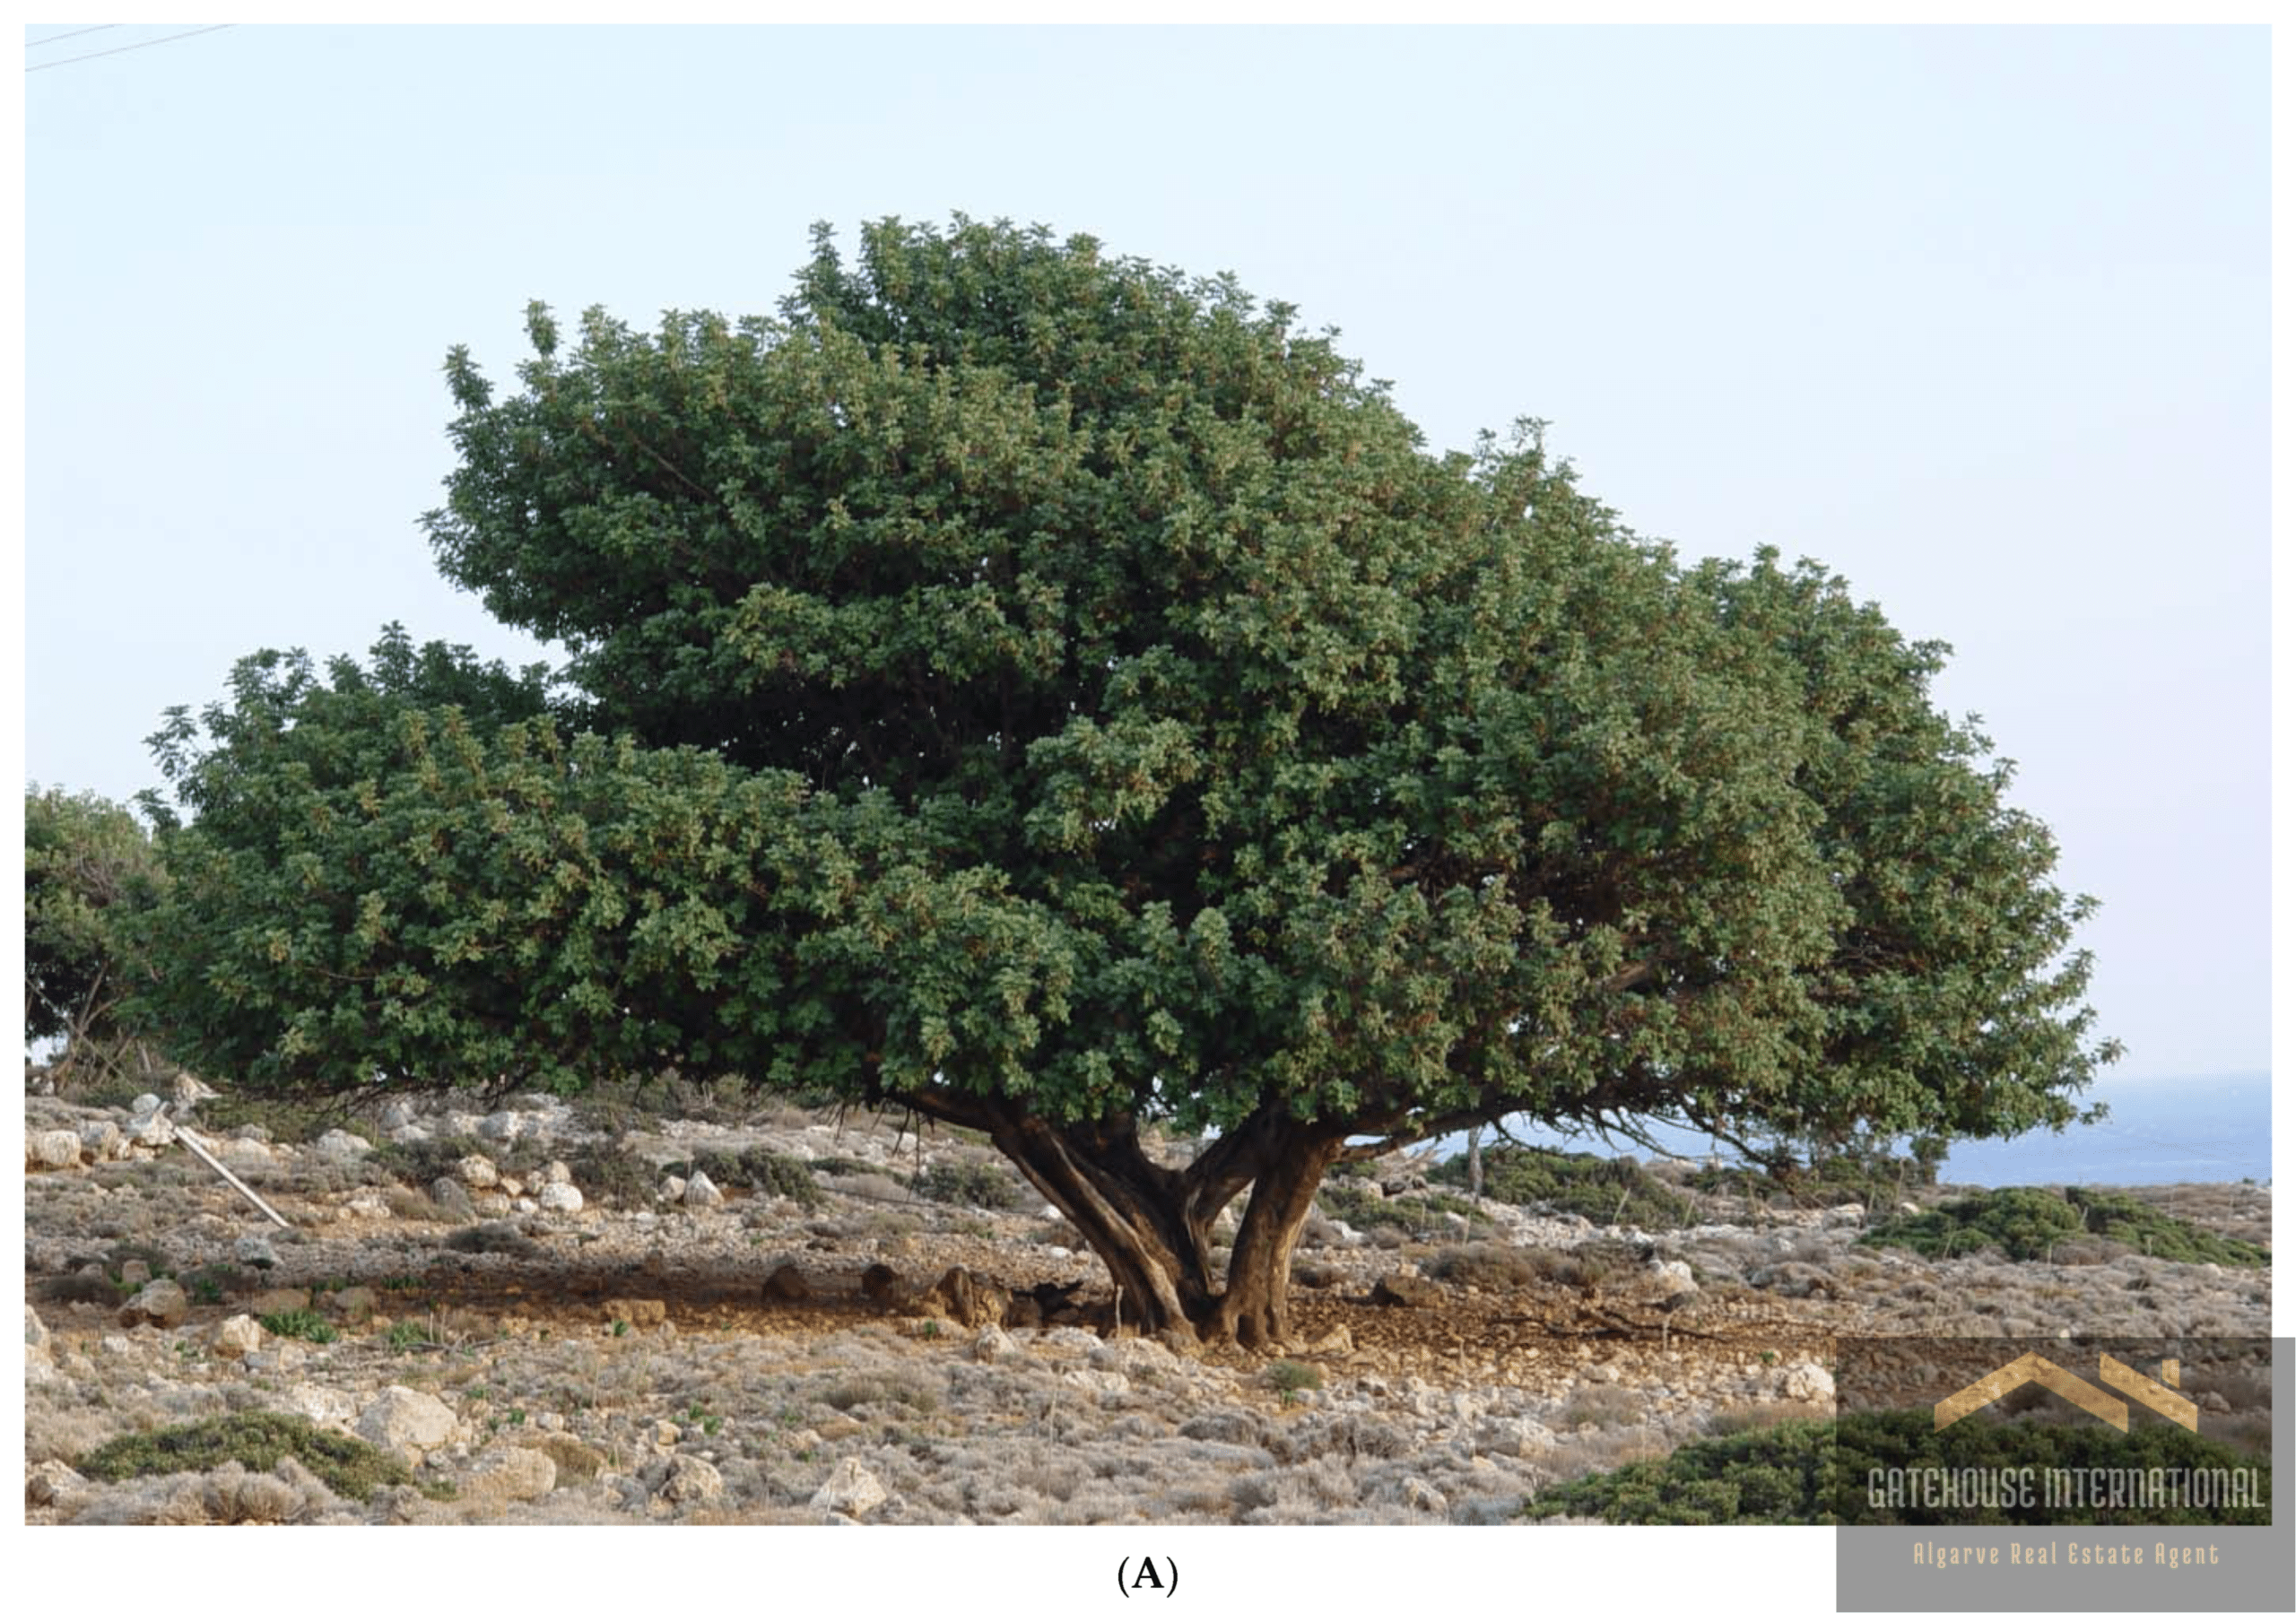 Carob or alfarroba tree on Algarve Farm